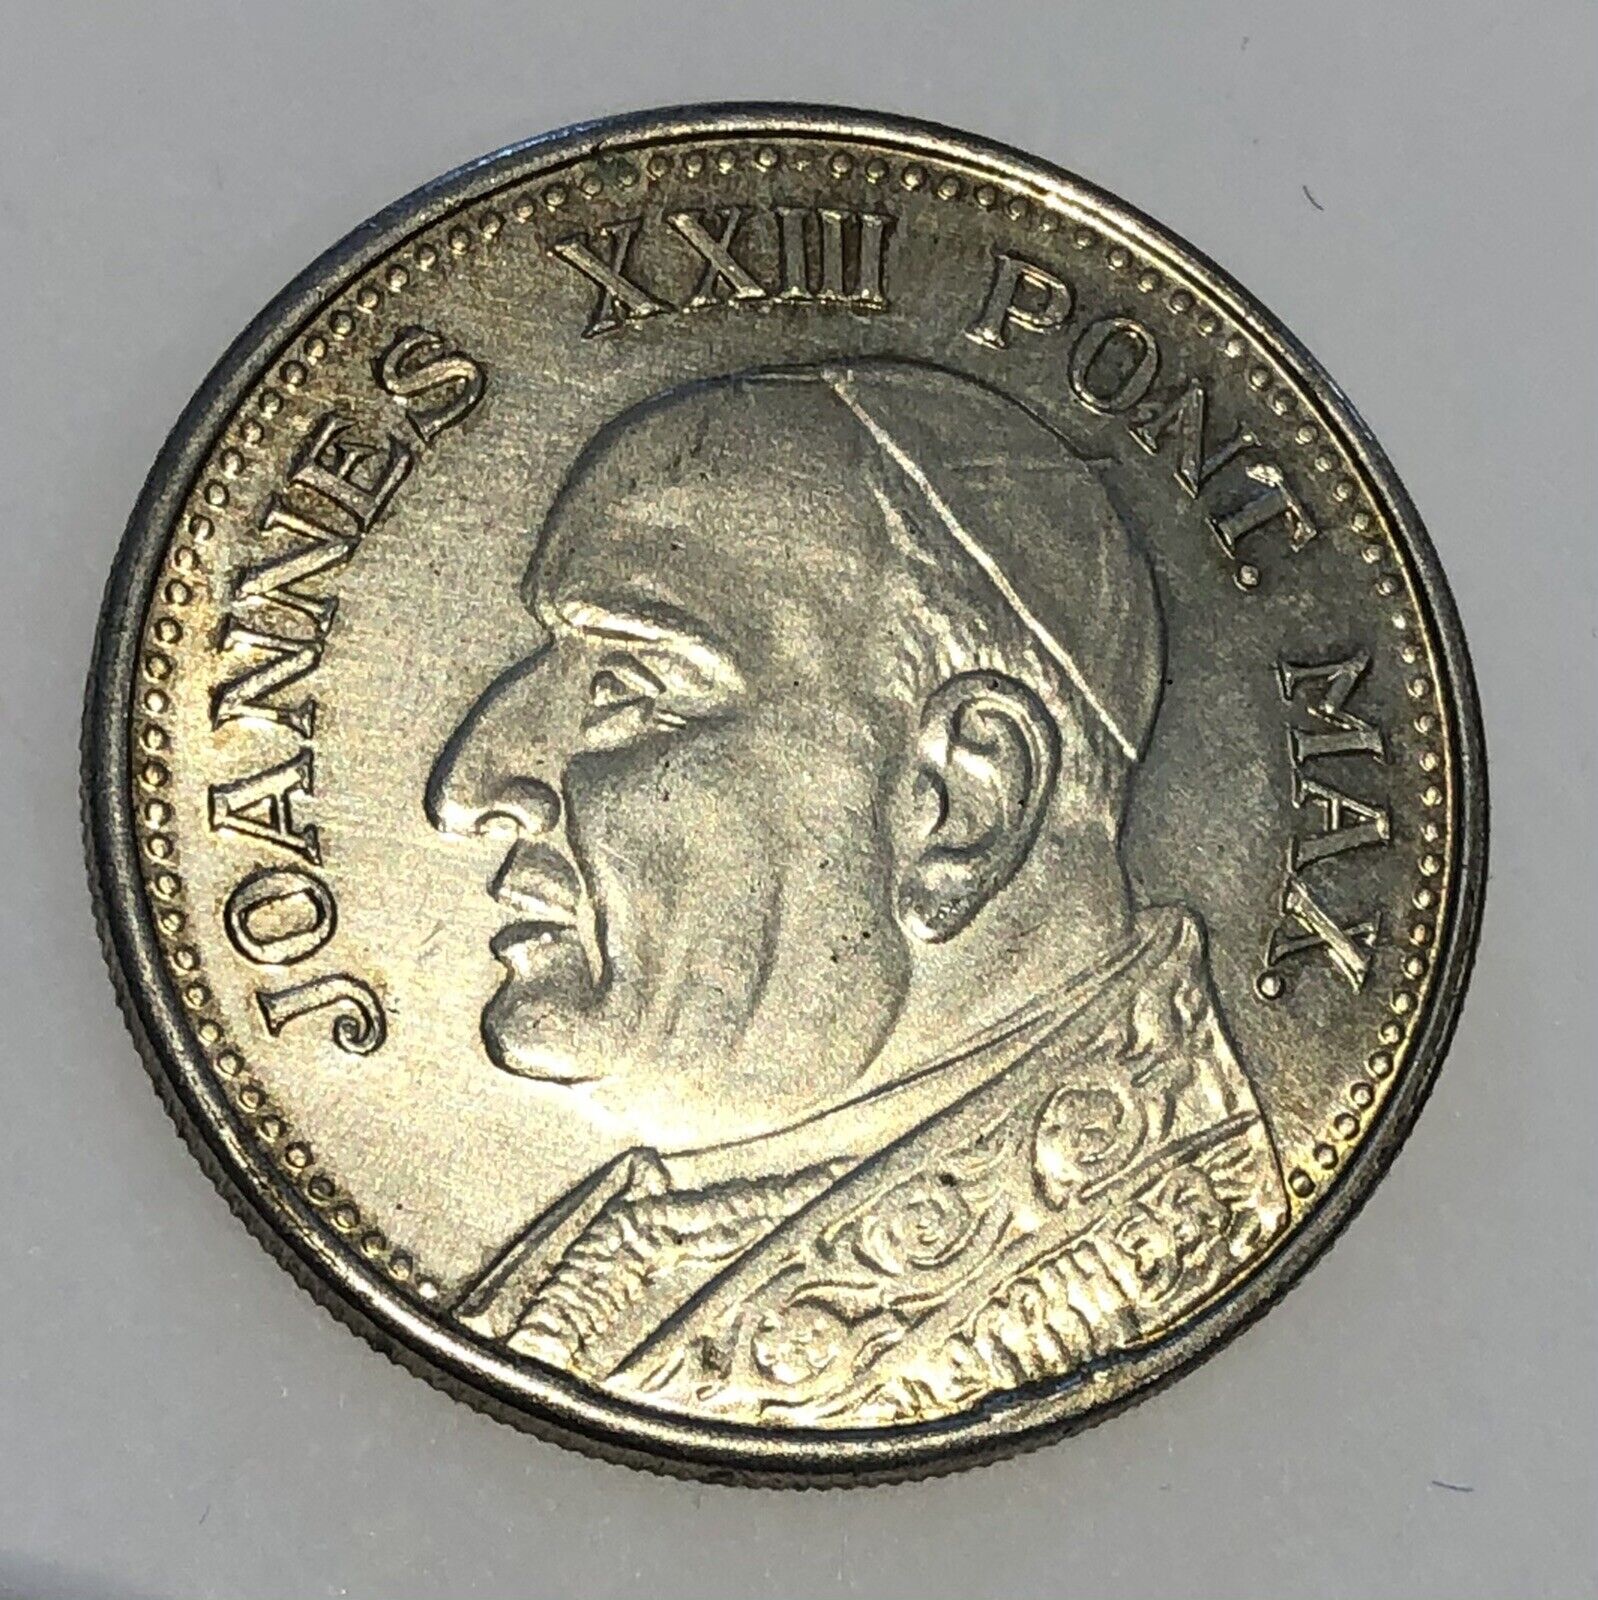 Lire Vatican Coins - Value of Vatican Lira Bimetallic Coin